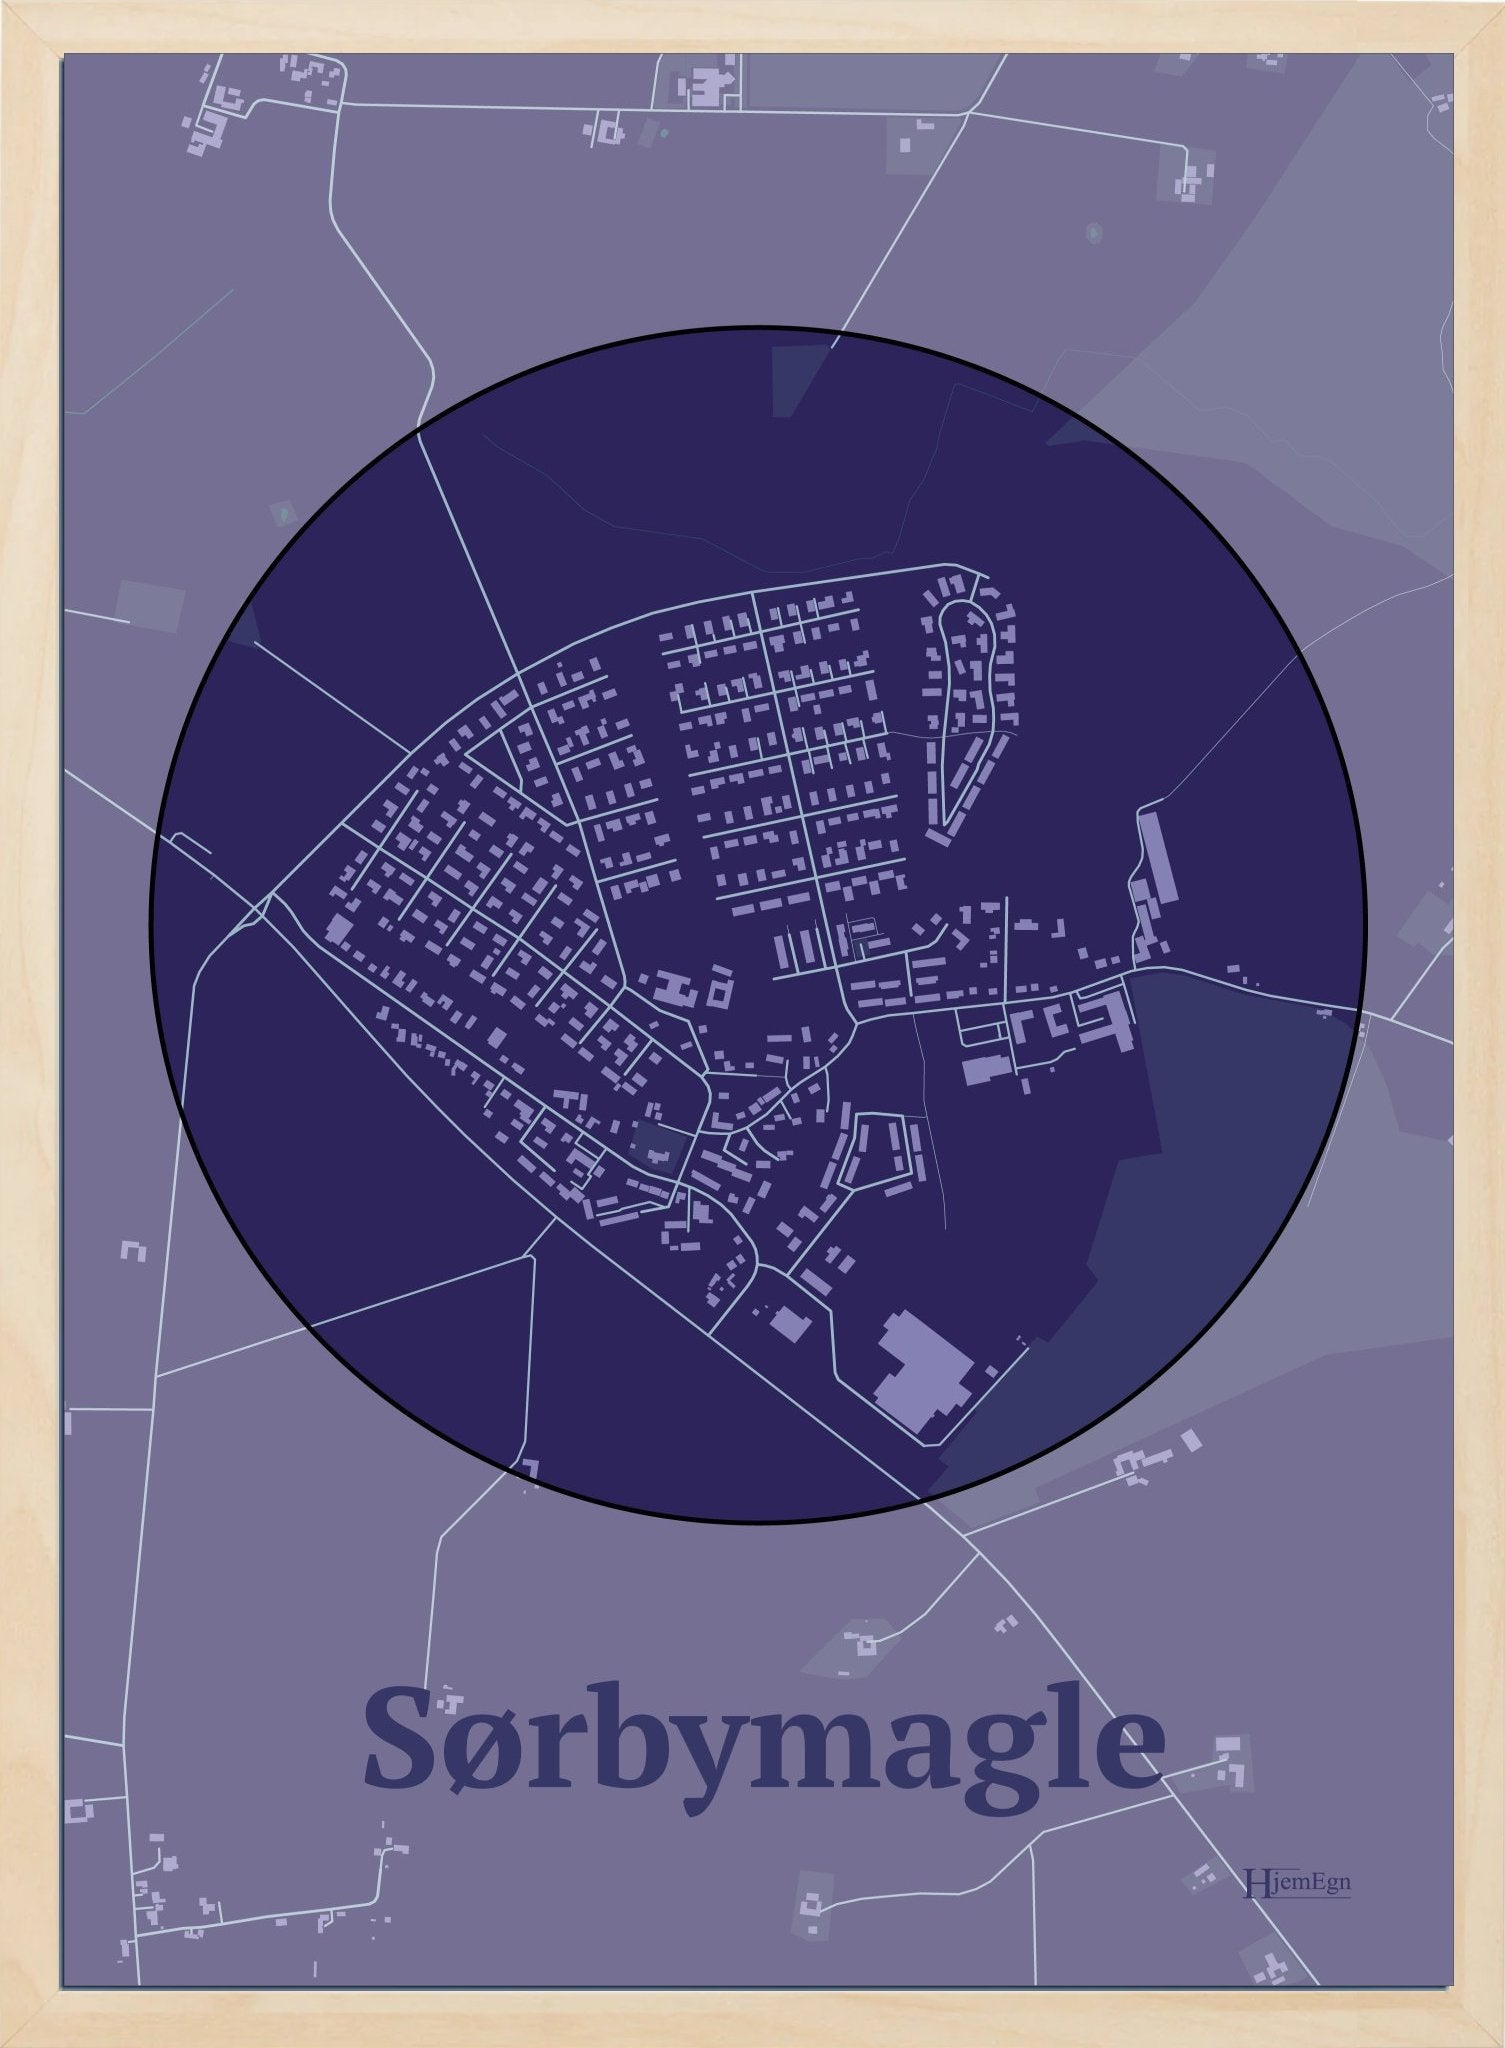 Sørbymagle plakat i farve mørk lilla og HjemEgn.dk design centrum. Design bykort for Sørbymagle